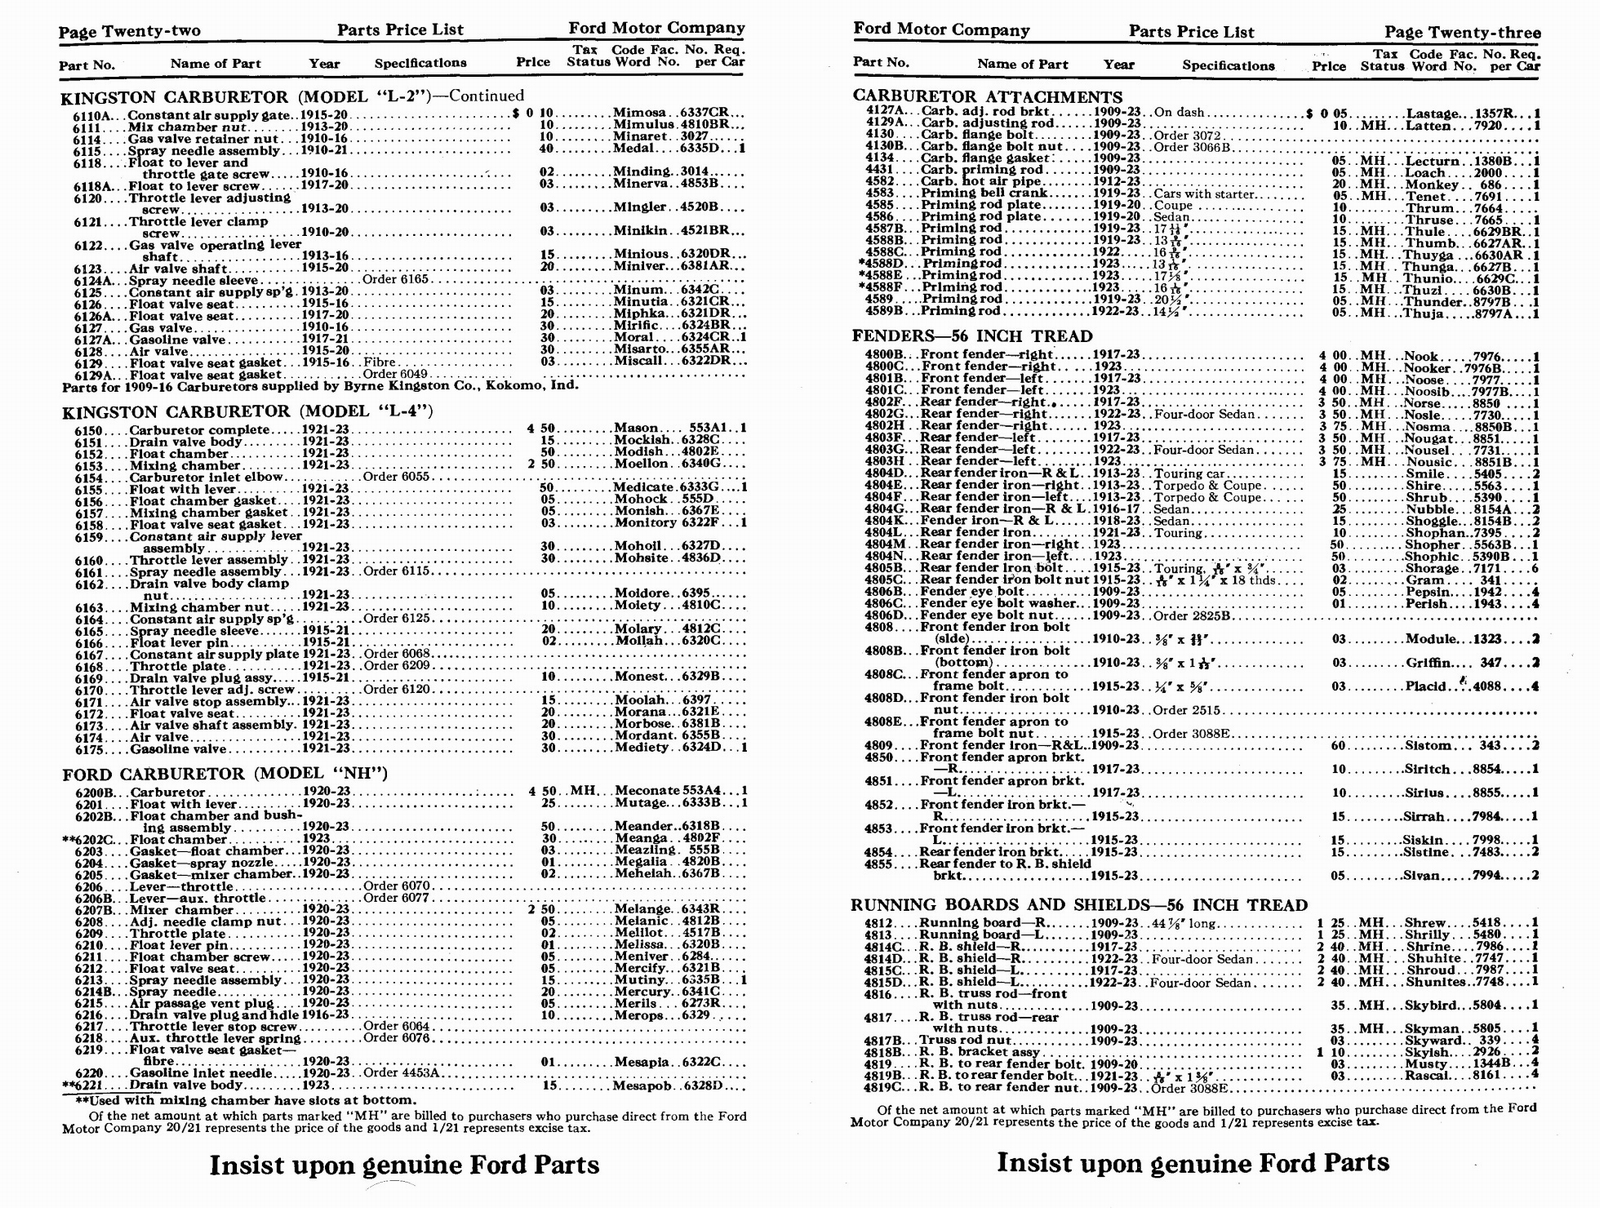 n_1923 Ford Price List-22-23.jpg